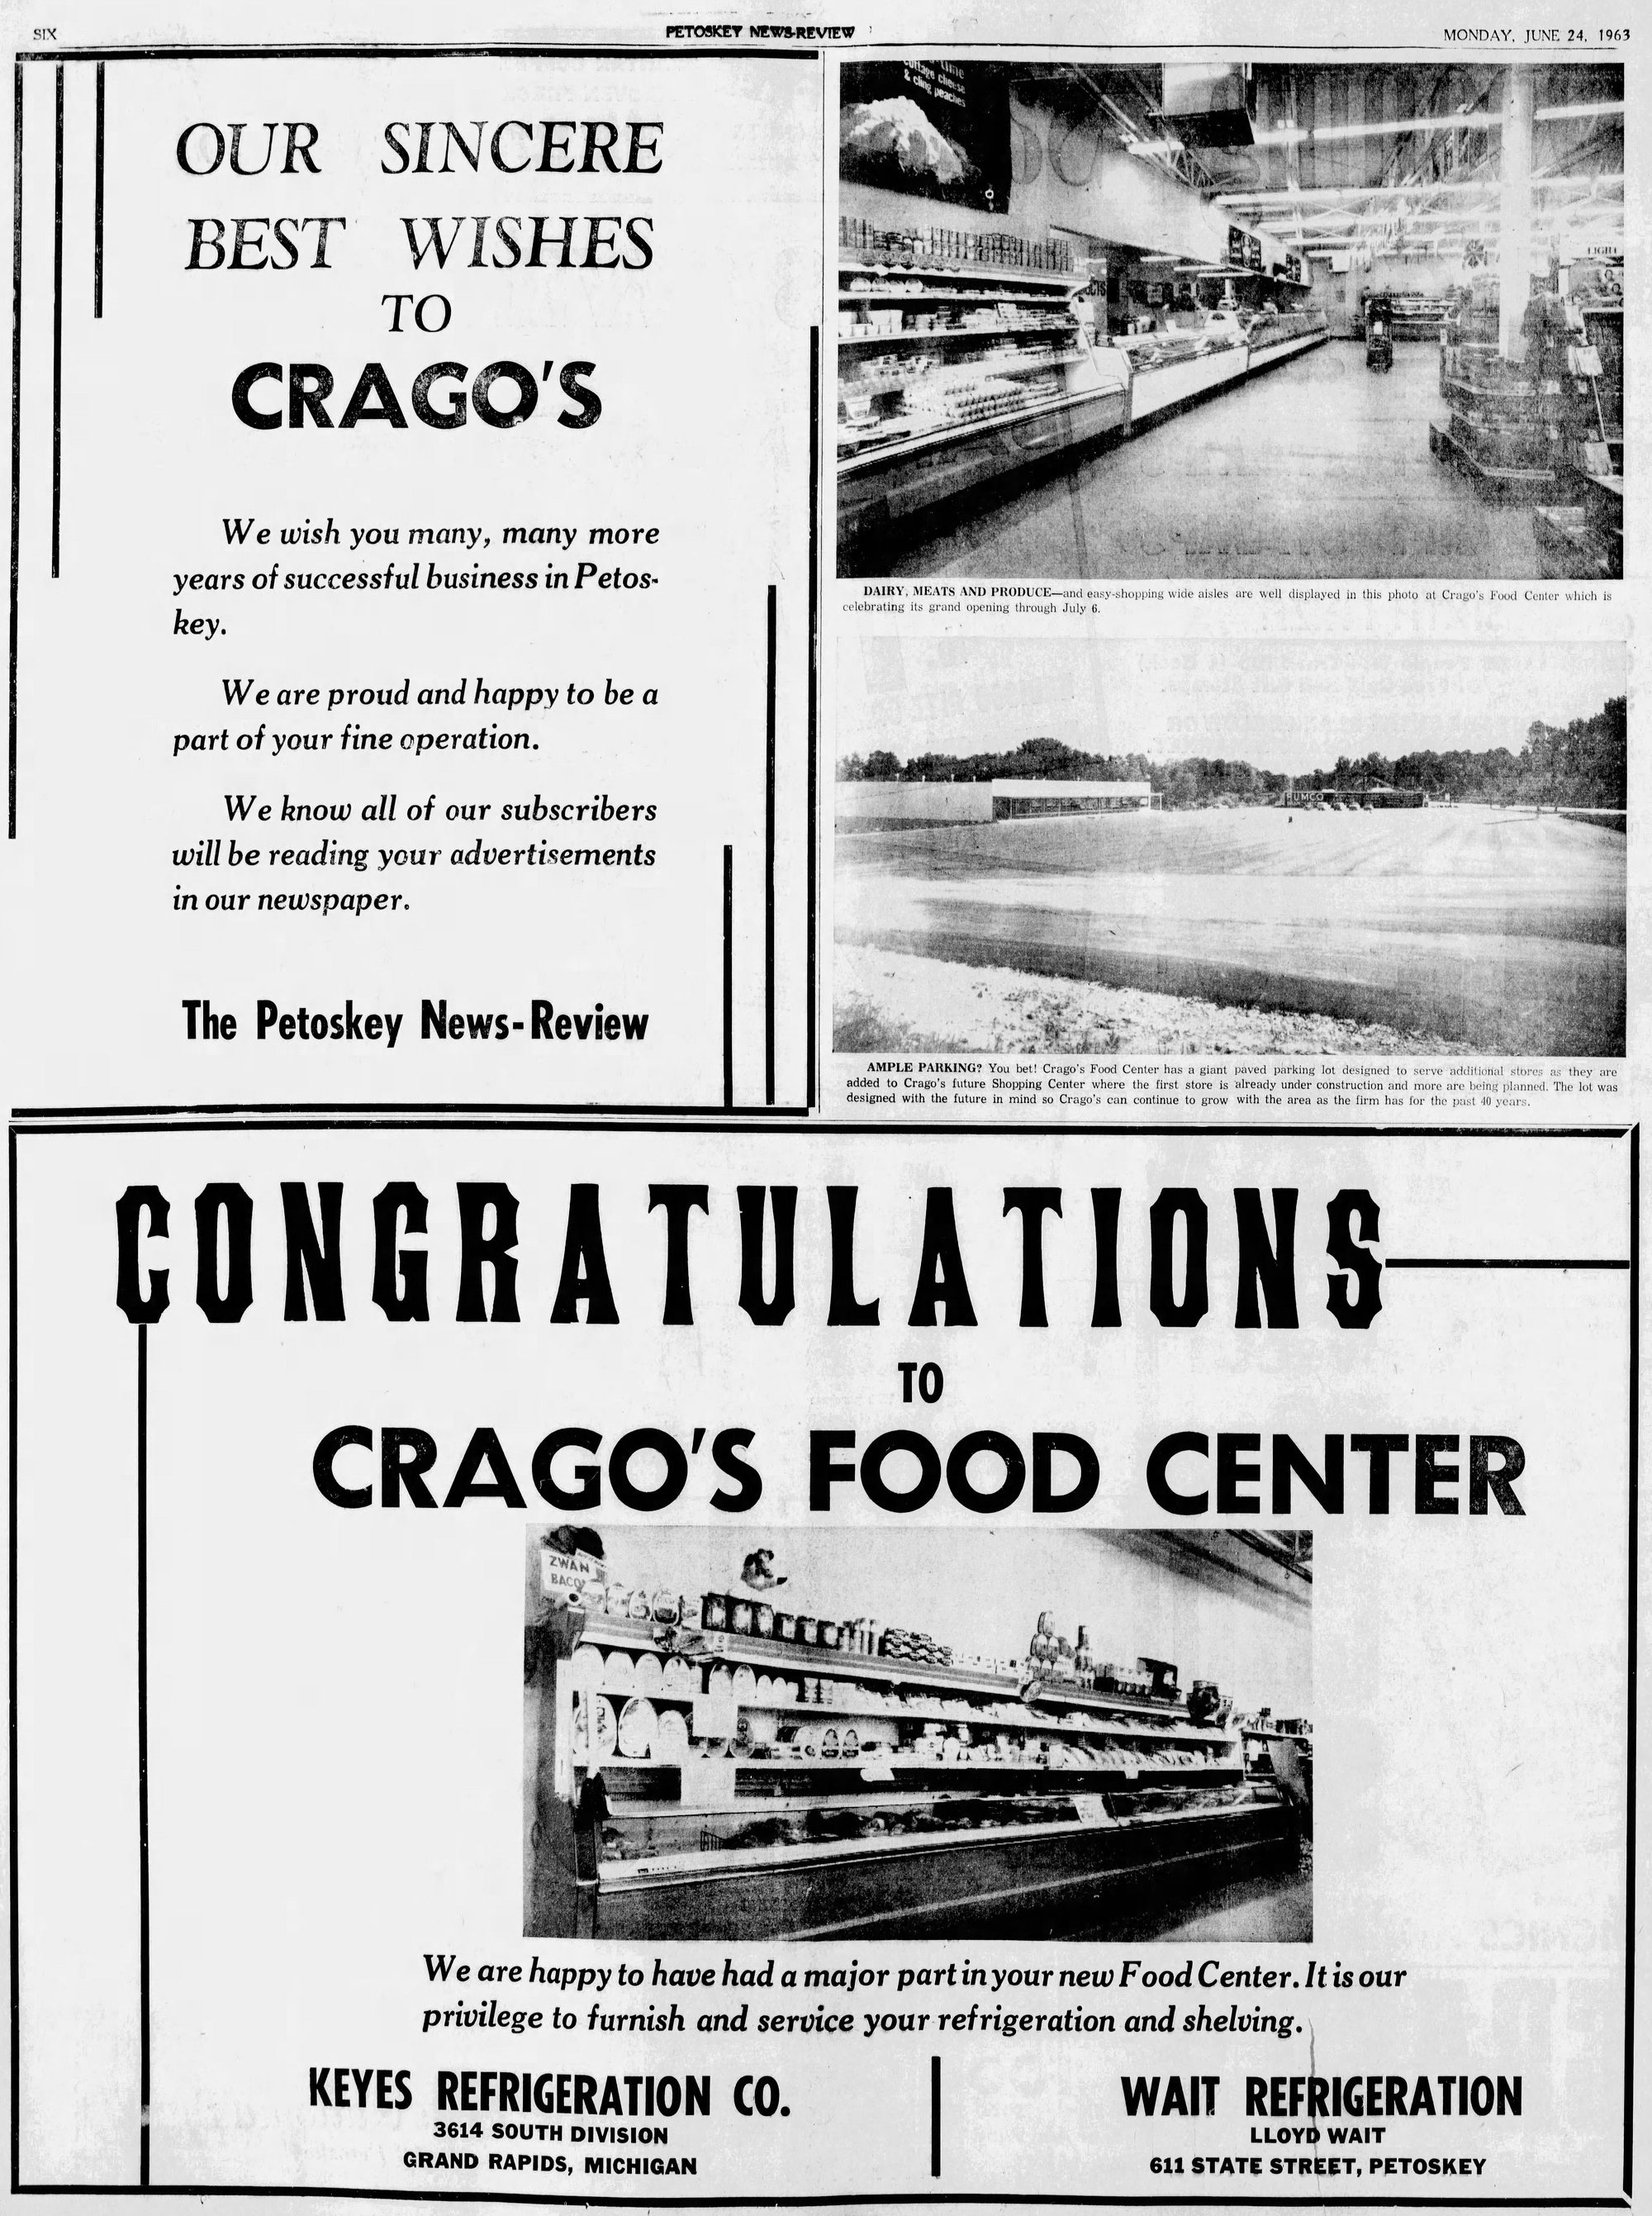 Cragos Shopping Center - June 24 1963 Ads